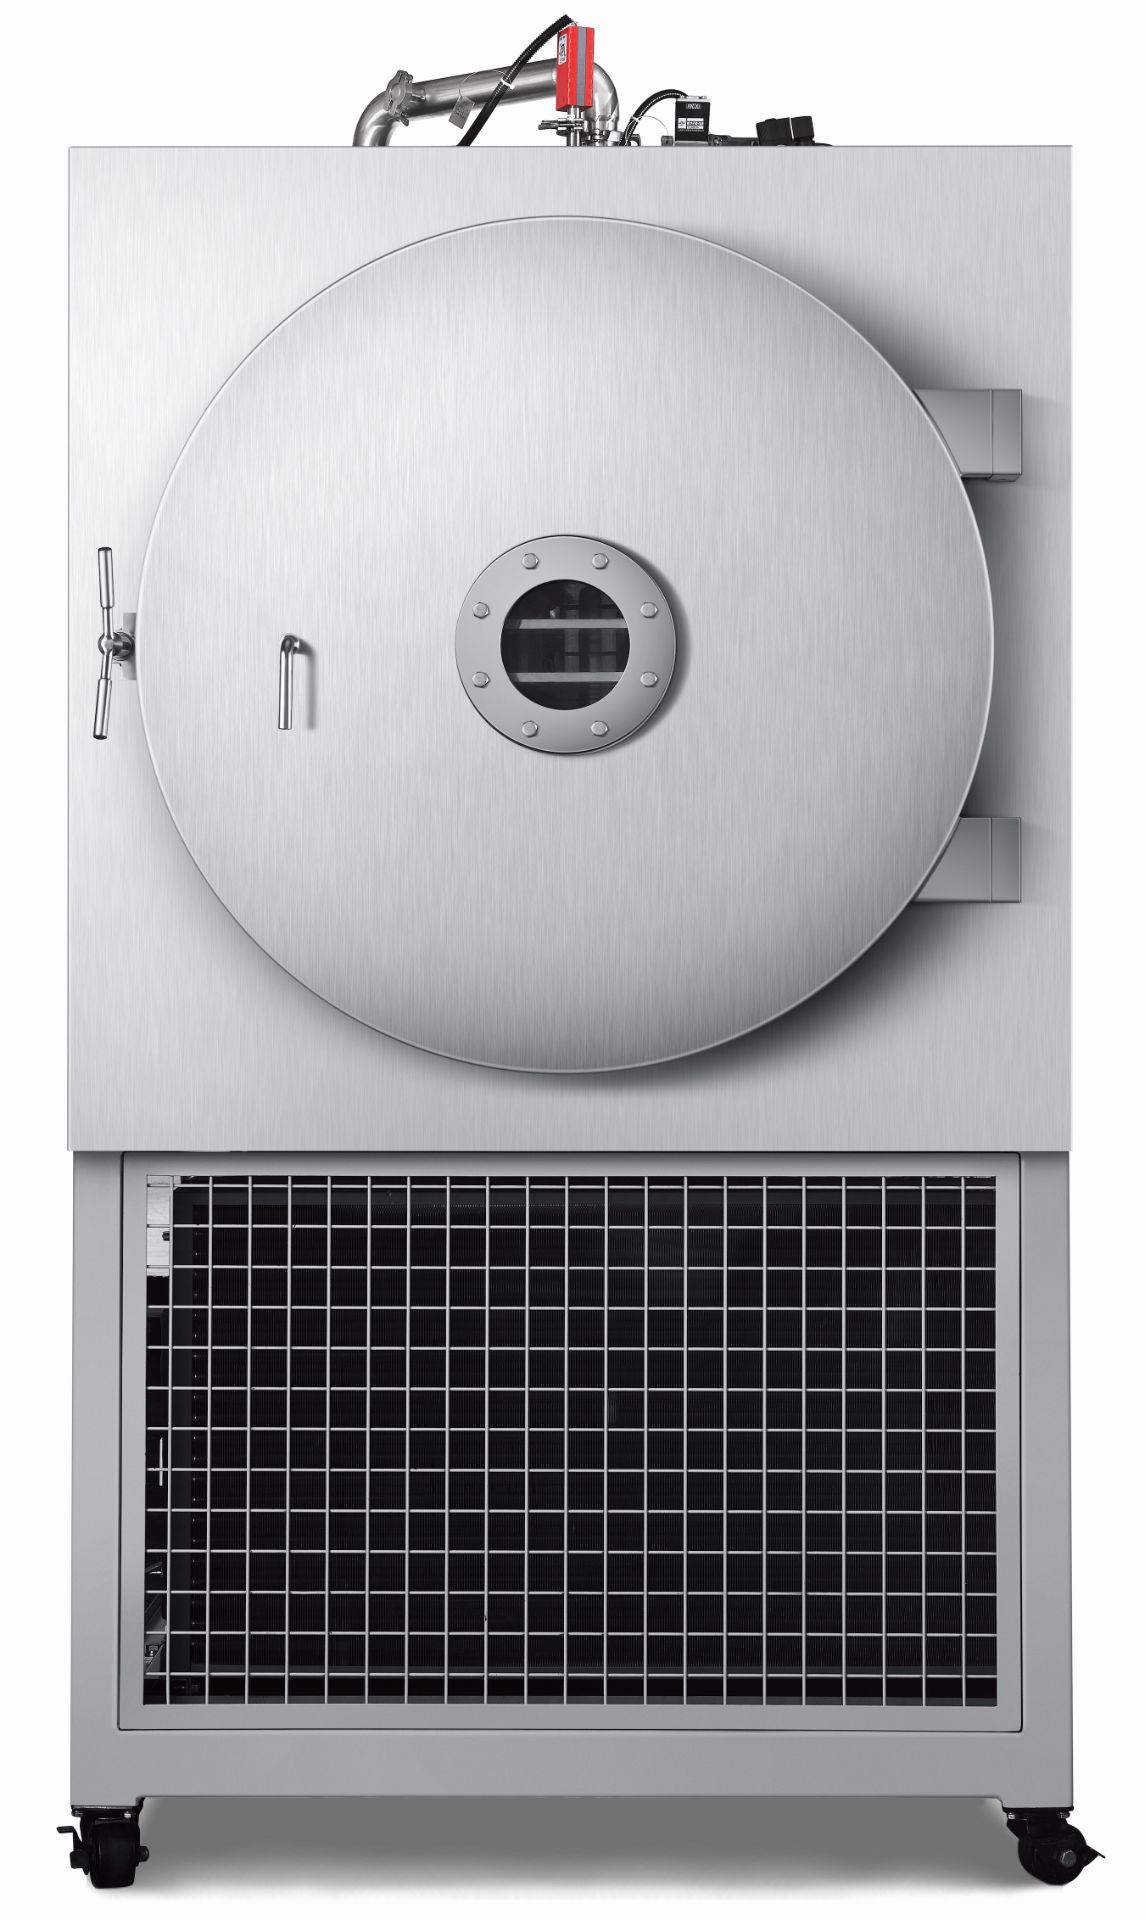 New/ Still-In-Original-Packaging Holland Green Science HighPerformance Freeze Dryer. Model Xiros 2 - Bild 2 aus 4